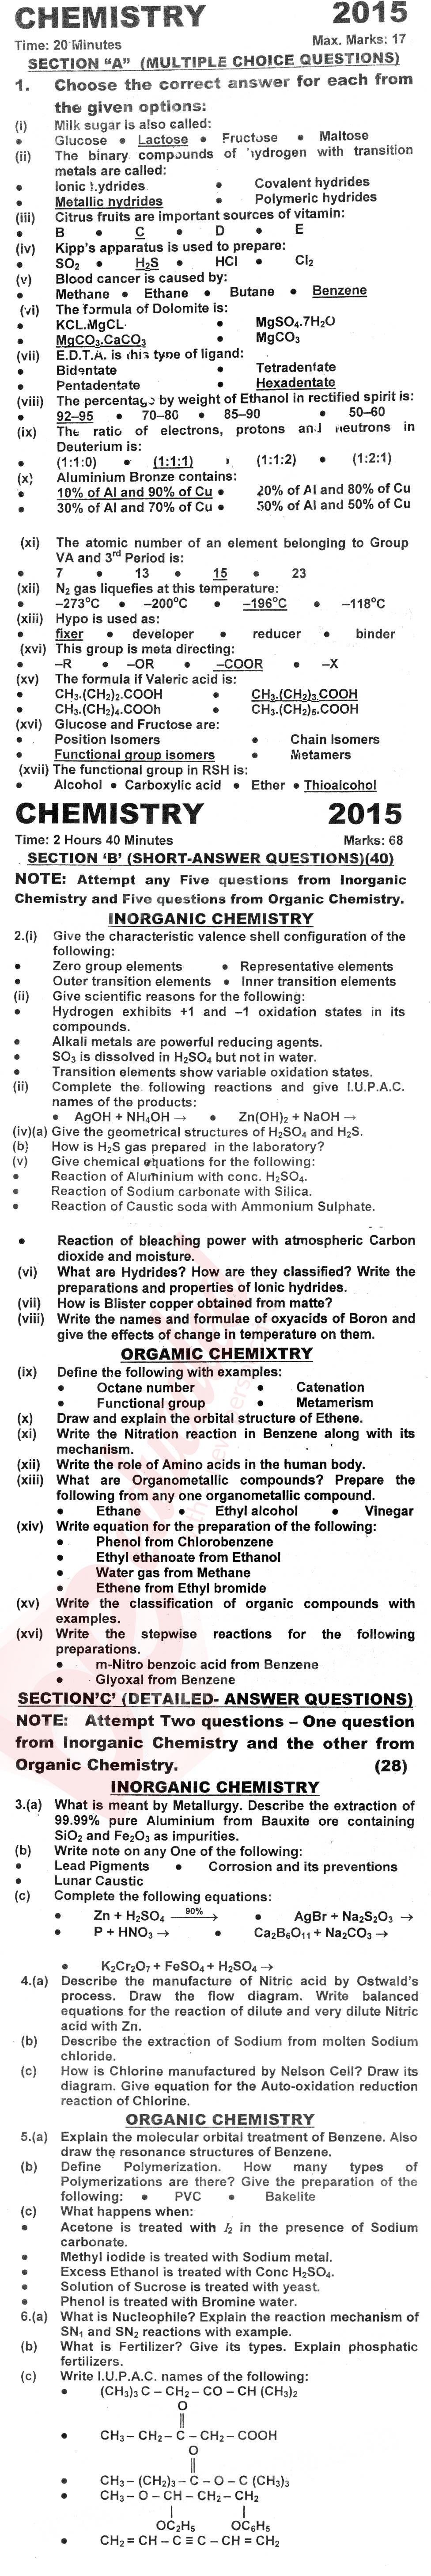 Chemistry FSC Part 2 Past Paper Group 1 KPBTE 2015